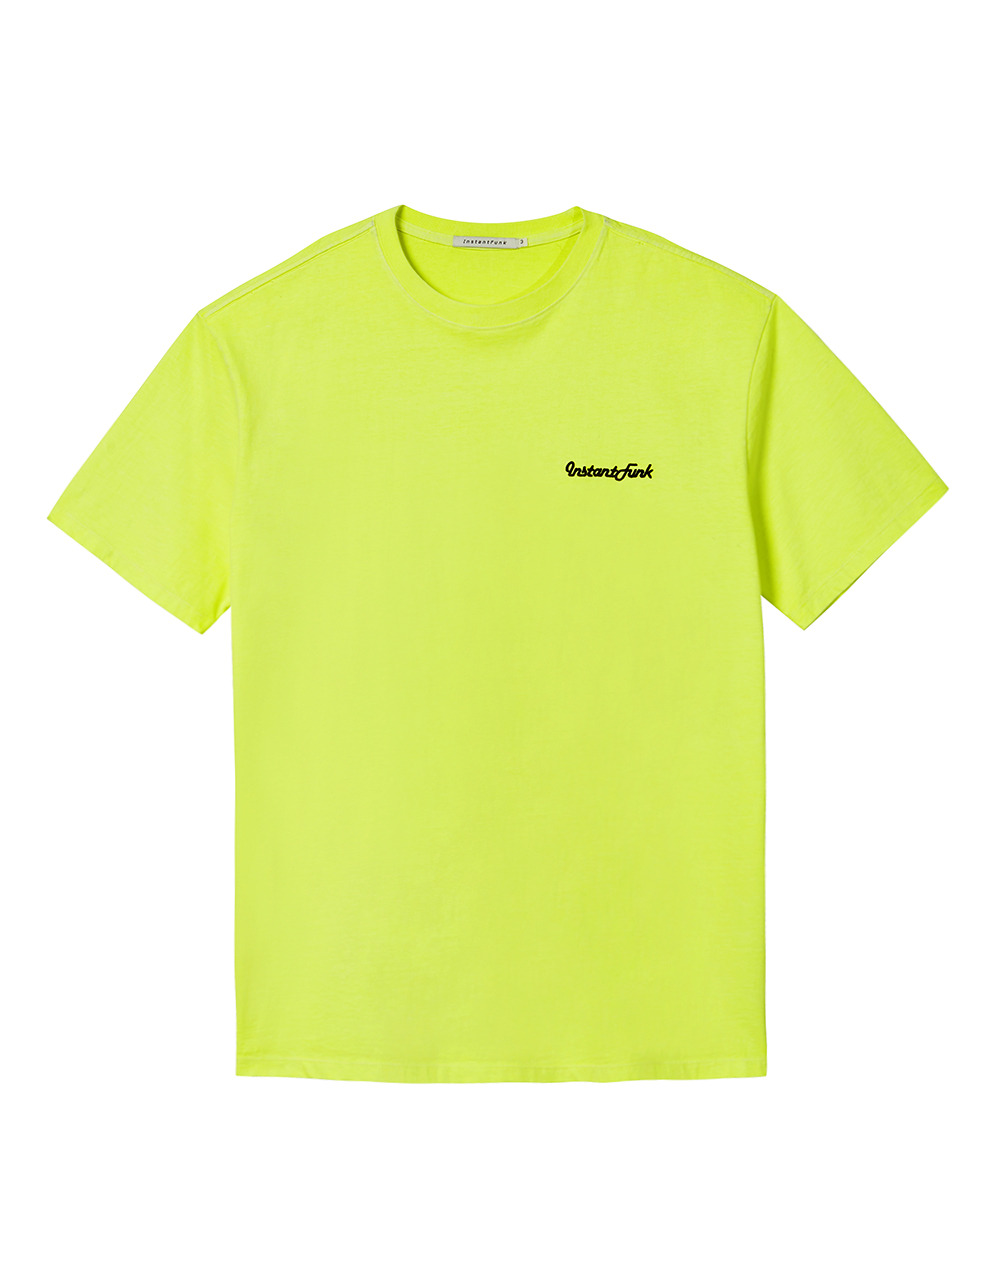 네온 피그먼트다잉 티셔츠 - 옐로우